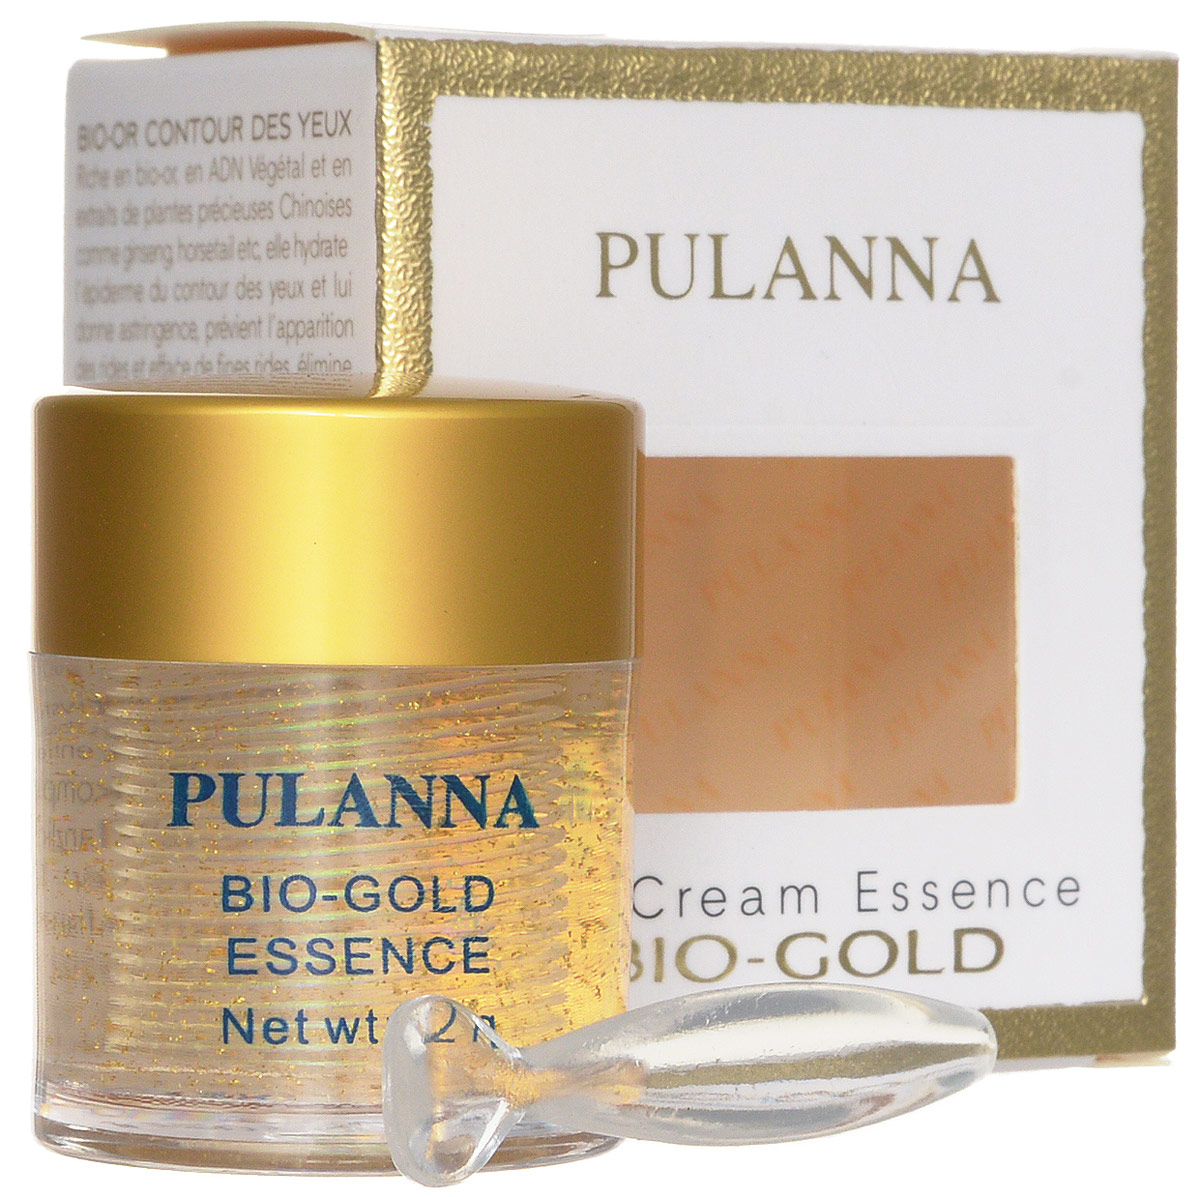 купить Pulanna Био-золотой гель для век на основе био-золота - Bio-gold Essence 21 г - заказ и доставка в Москве и Санкт-Петербурге